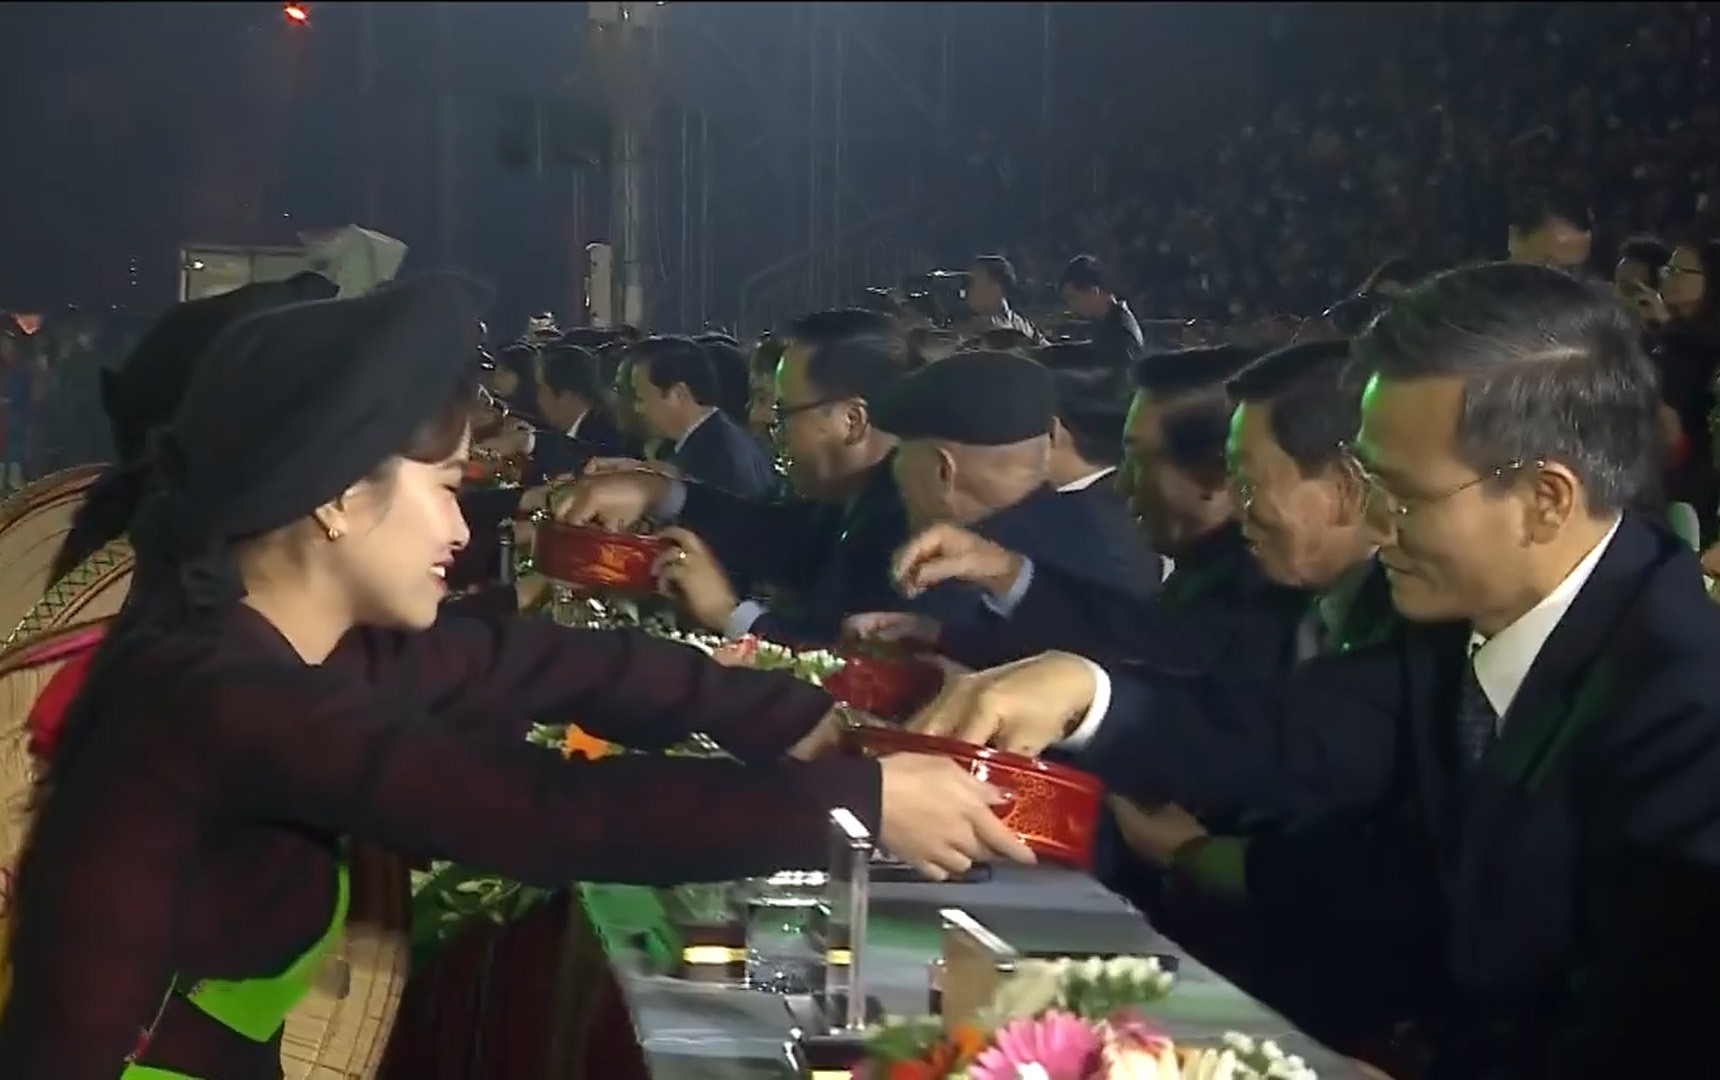 Trên nền nhạc của bài của bài quan họ “Mời nước, mời trầu“, các liền chị gửi đến Phó Thủ tướng Trần Hồng Hà cùng các quan khách Trung ương và địa phương những cơi trầu têm cánh phượng, thể hiện tấm lòng hiếu khách của người Bắc Ninh - Kinh Bắc.